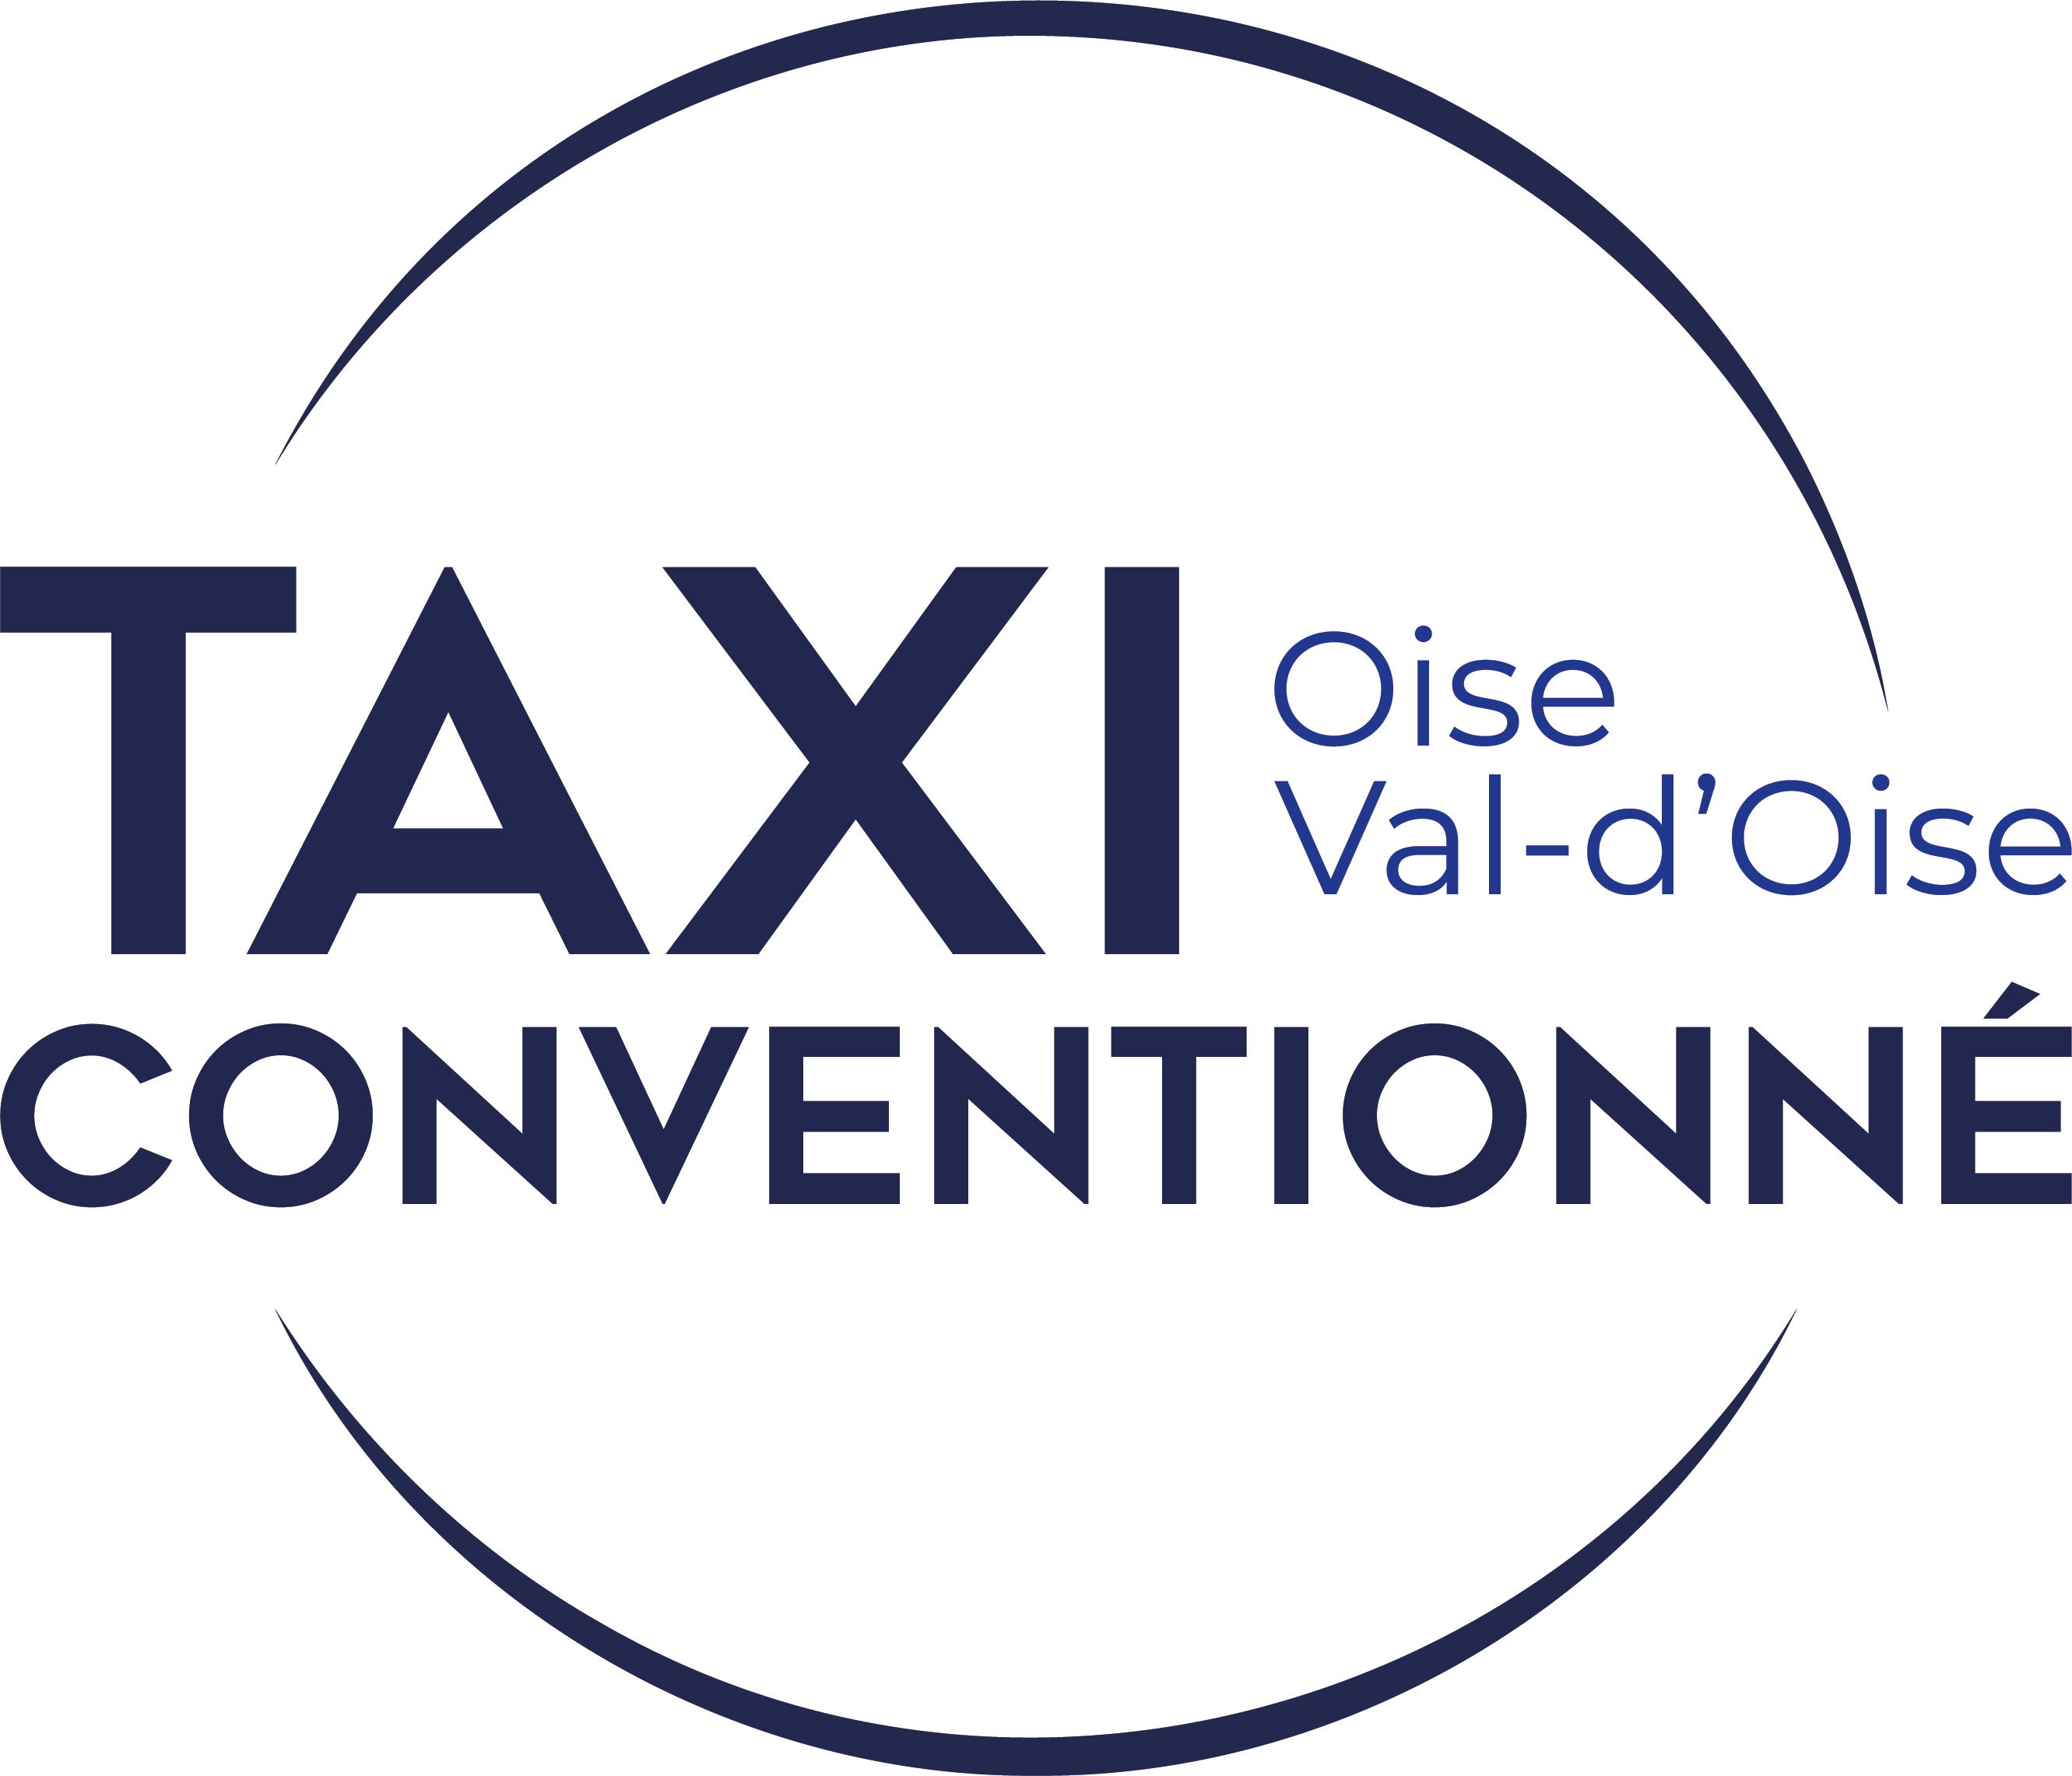 Taxi Conventionné